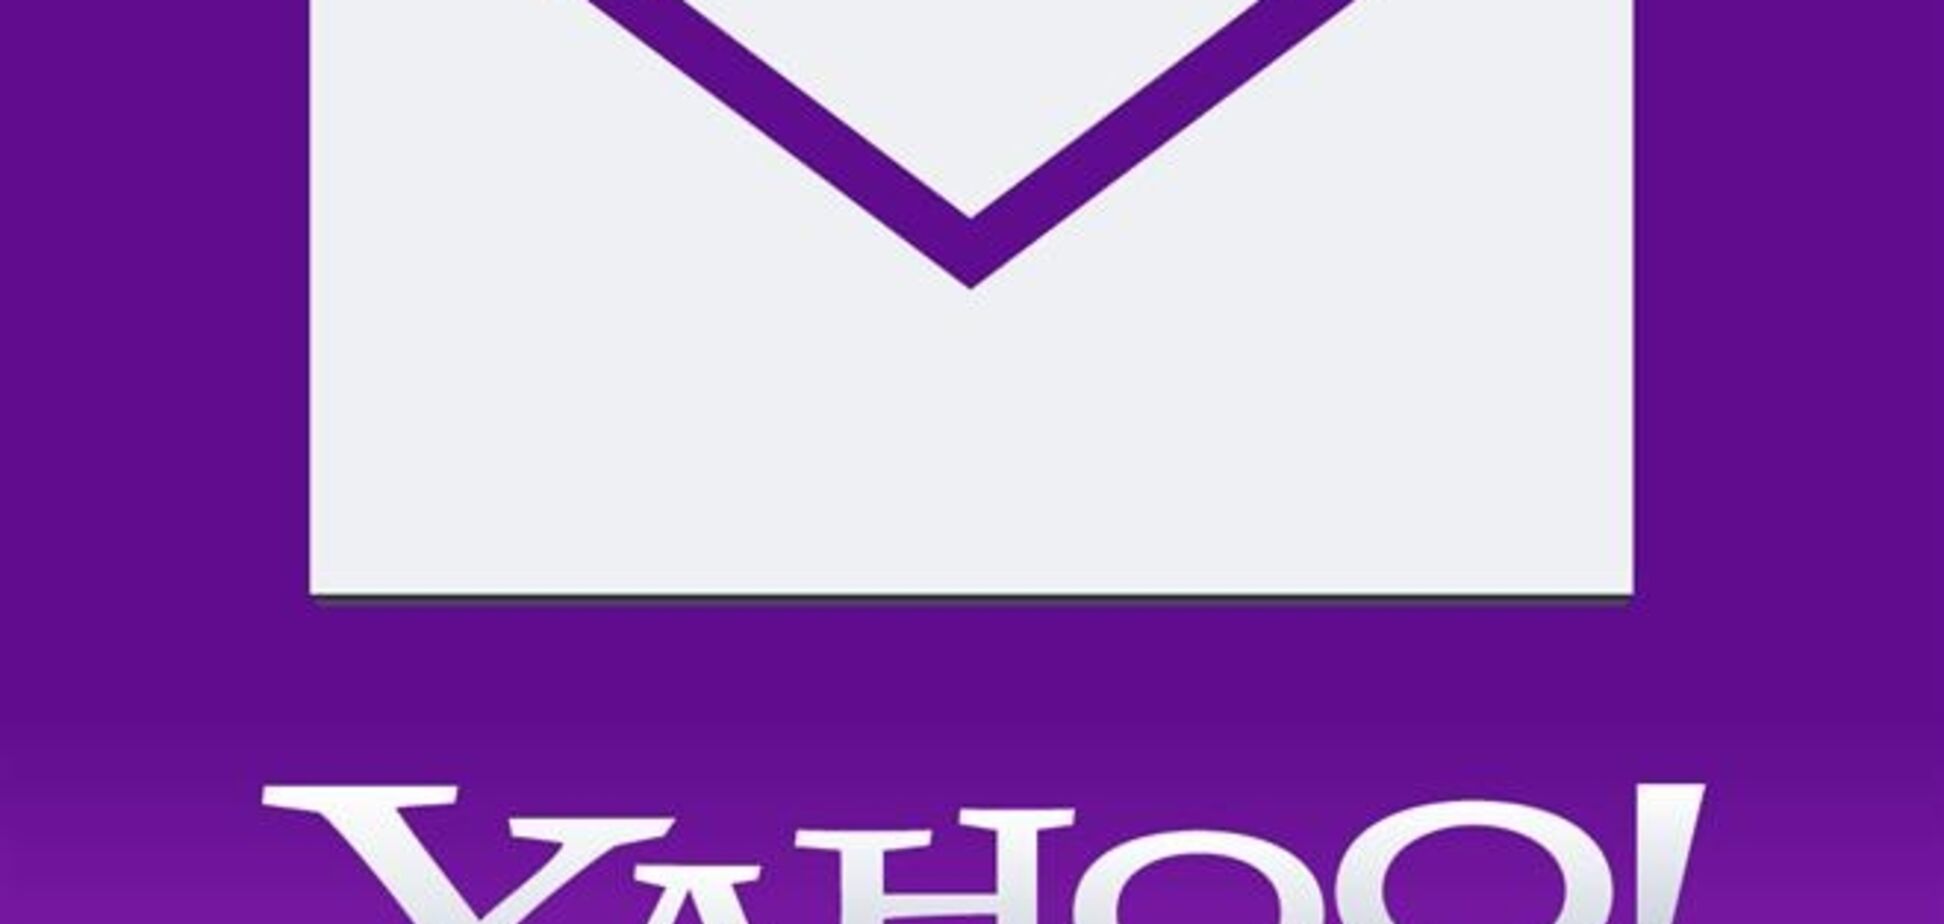 Yahoo! заявила о хакерской атаке и утечке данных пользователей